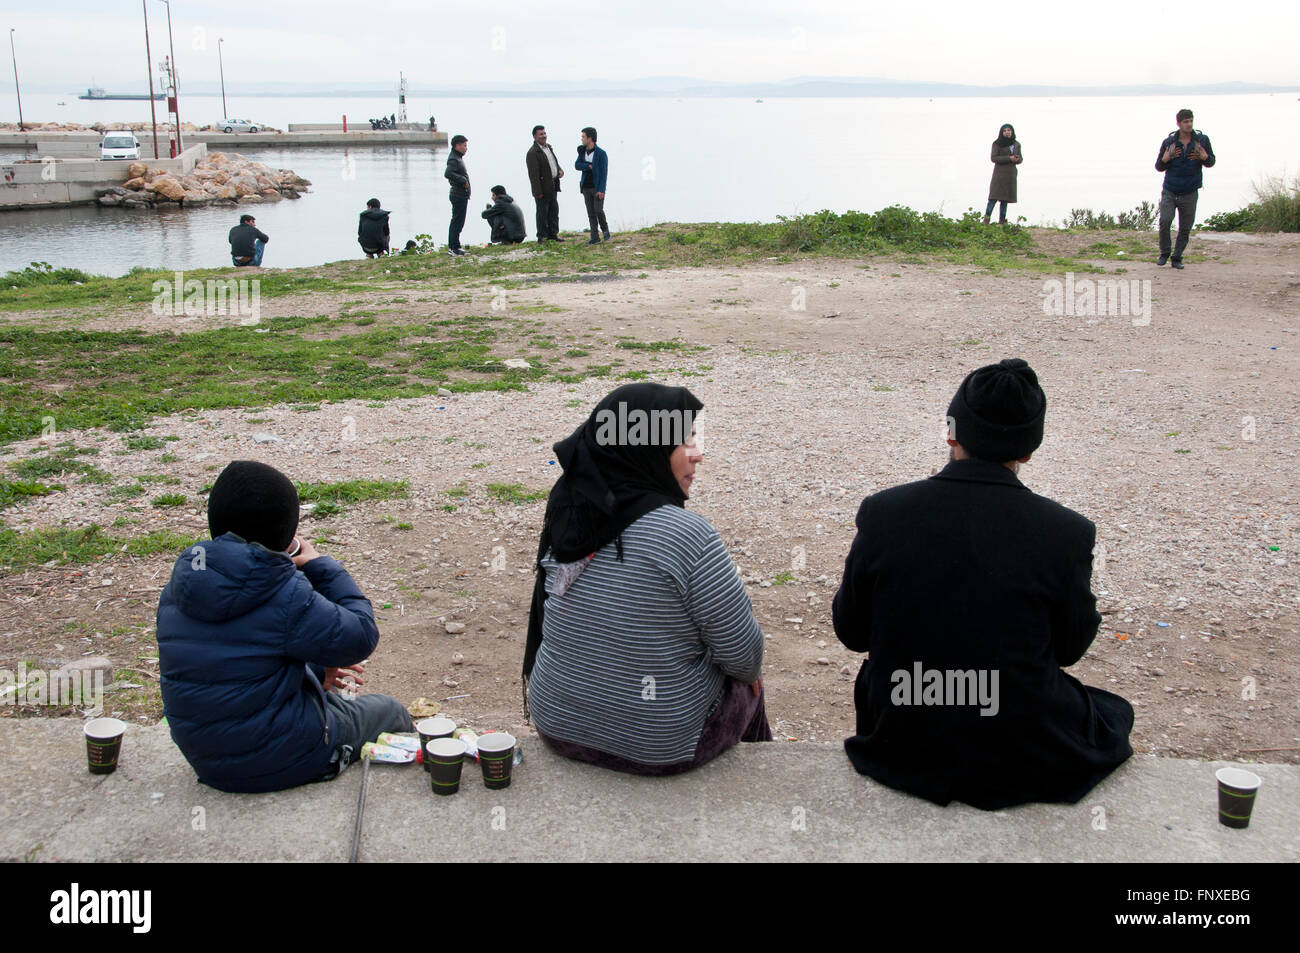 L'île de Chios, l'un des lieux où des réfugiés de Turquie, en route vers le nord de l'Europe. Les réfugiés nouvellement arrivés se détendre Banque D'Images